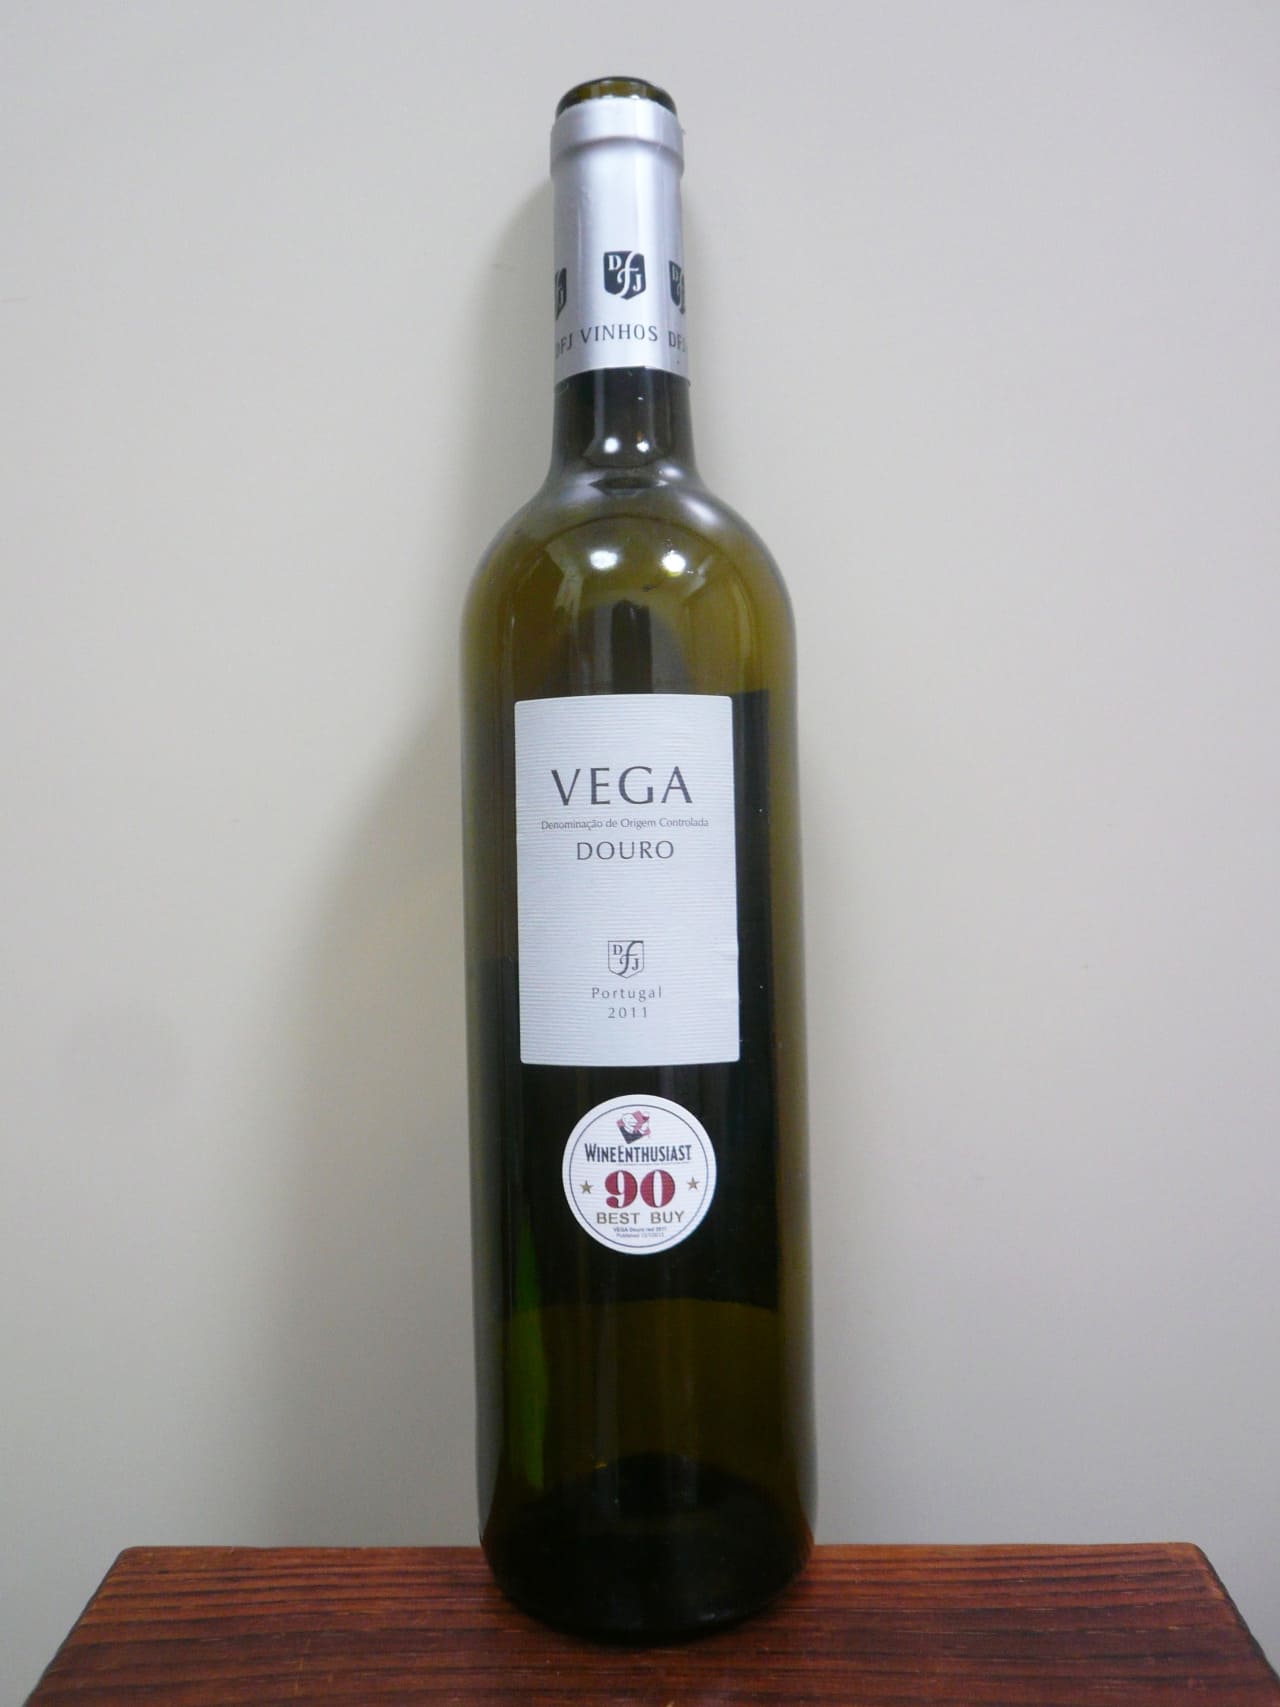 DFJ Vinhos Vega Douro